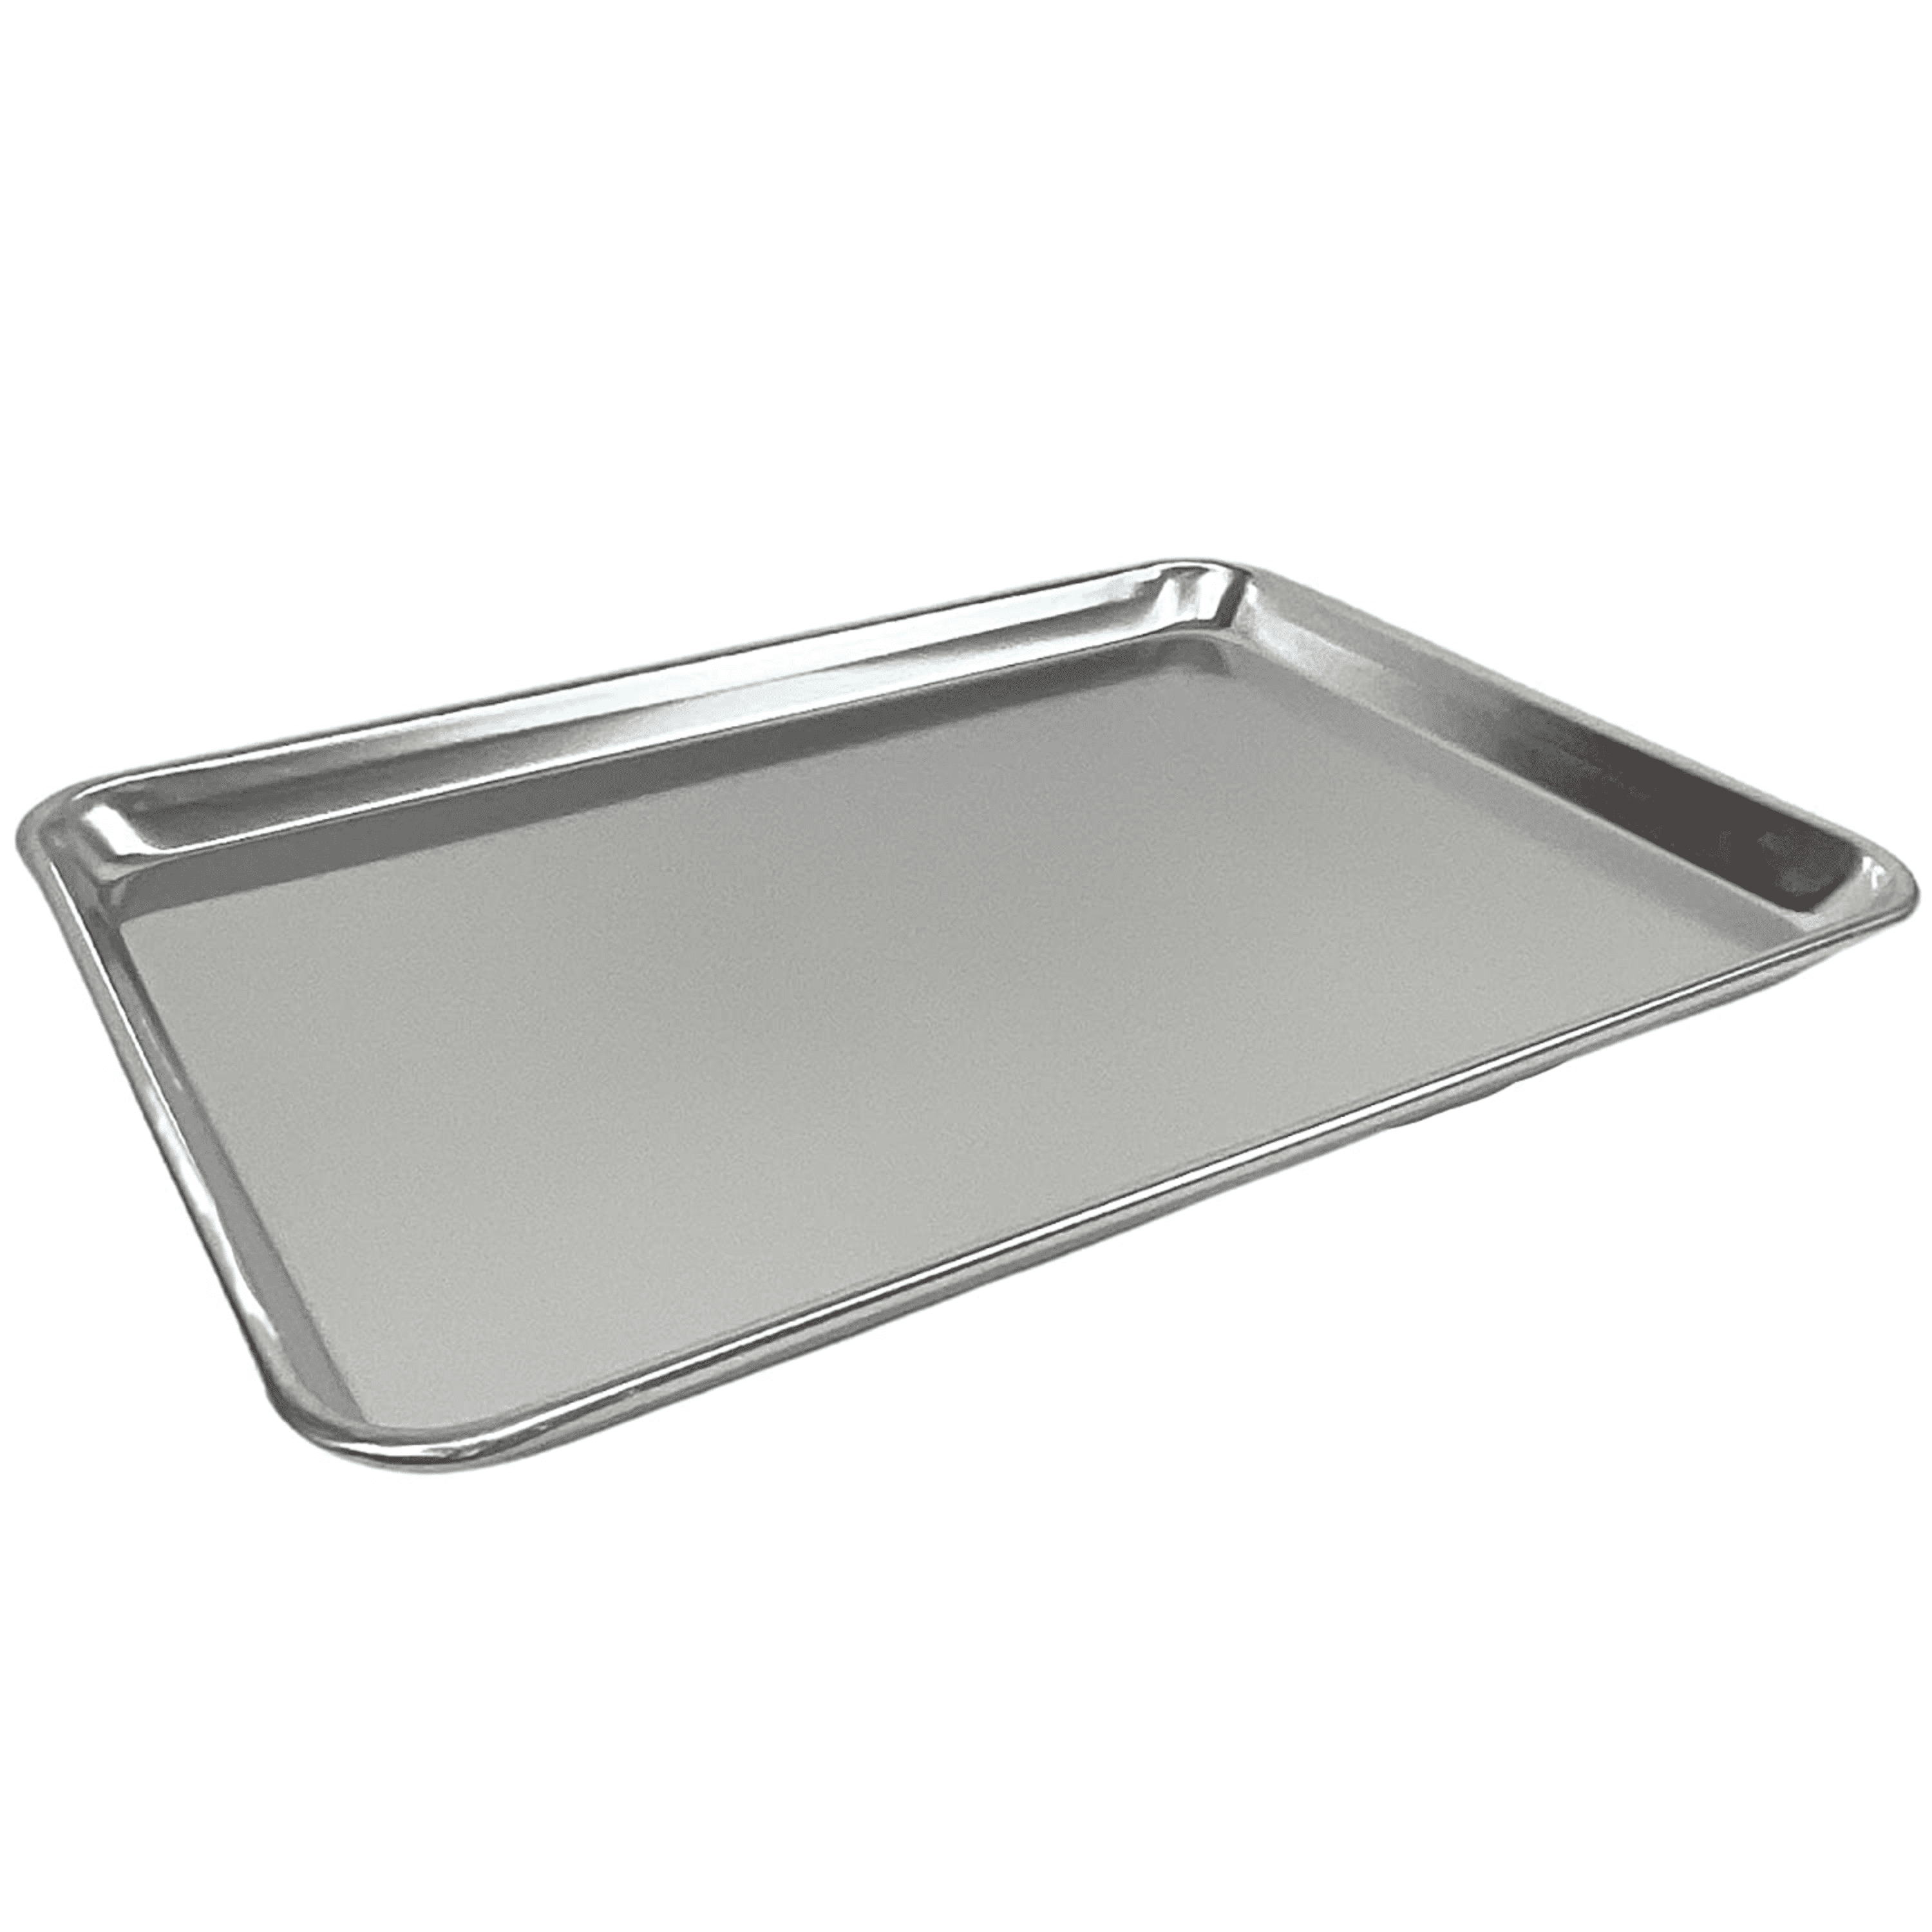 FSE Commercial Sheet Pan, Half Size, 20-Gauge, Aluminum Bun Pan